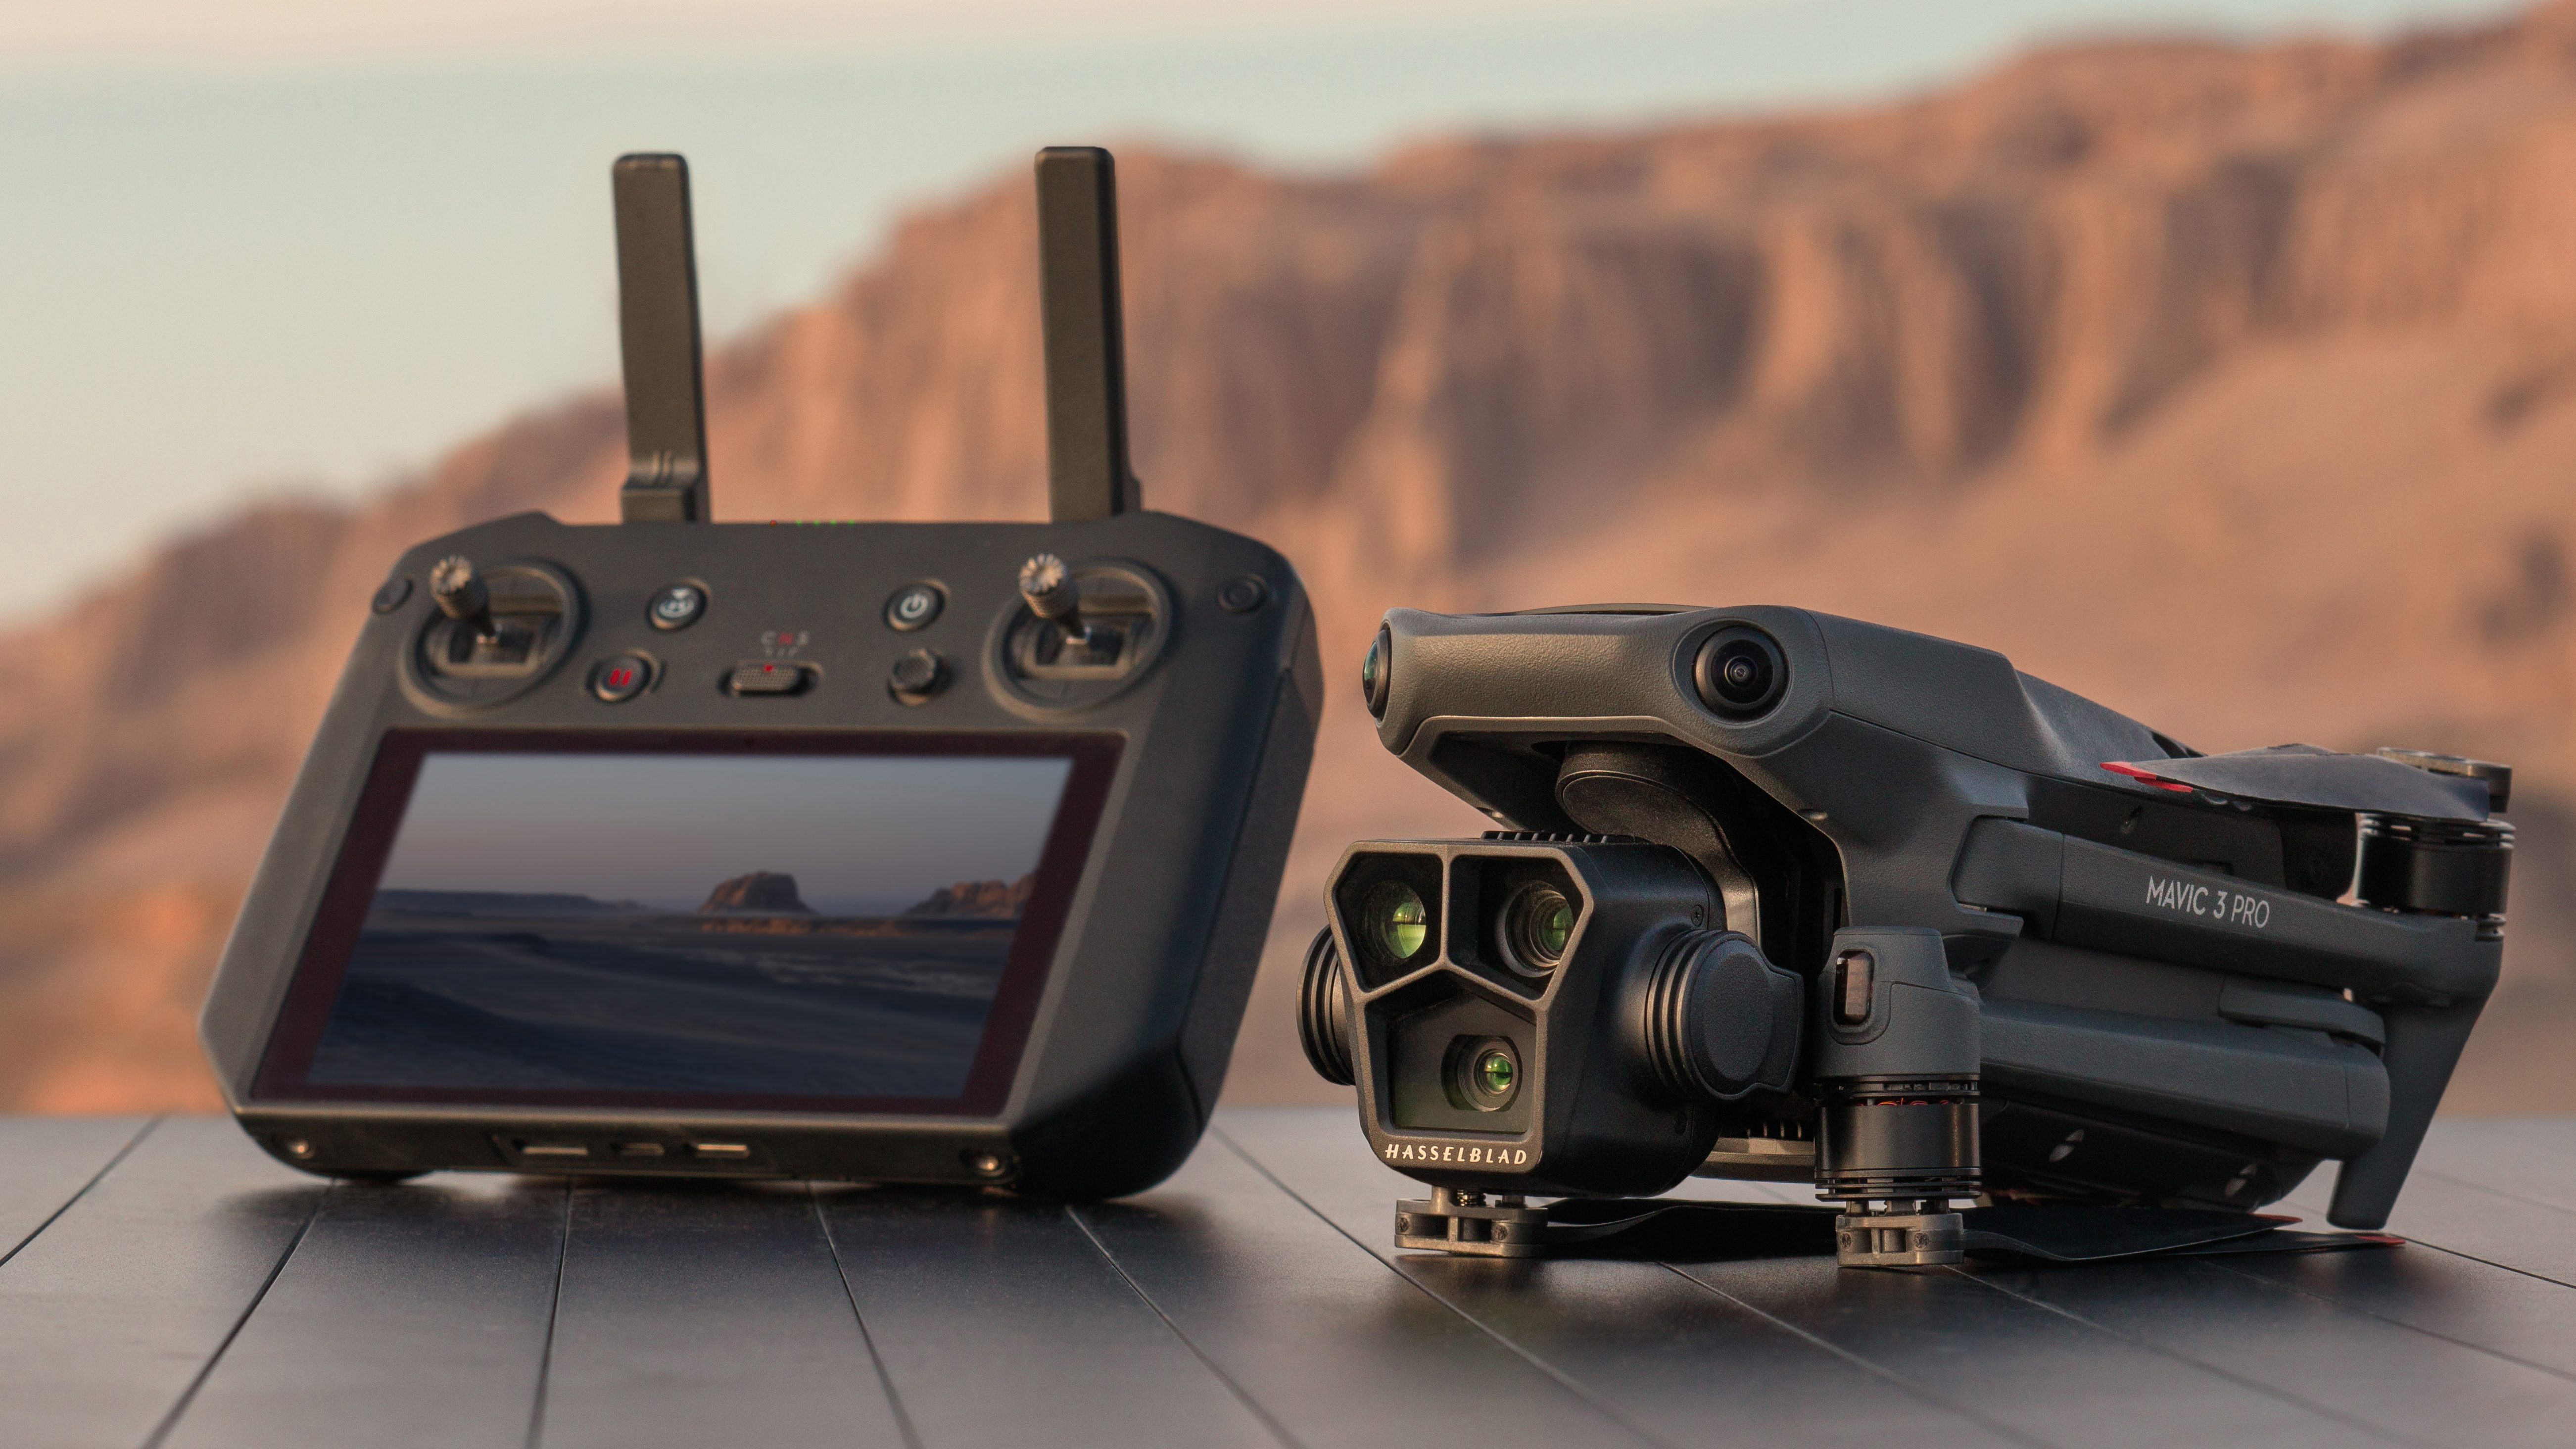 El dron DJI Mavic 3 Pro sentado sobre una roca junto a su controlador